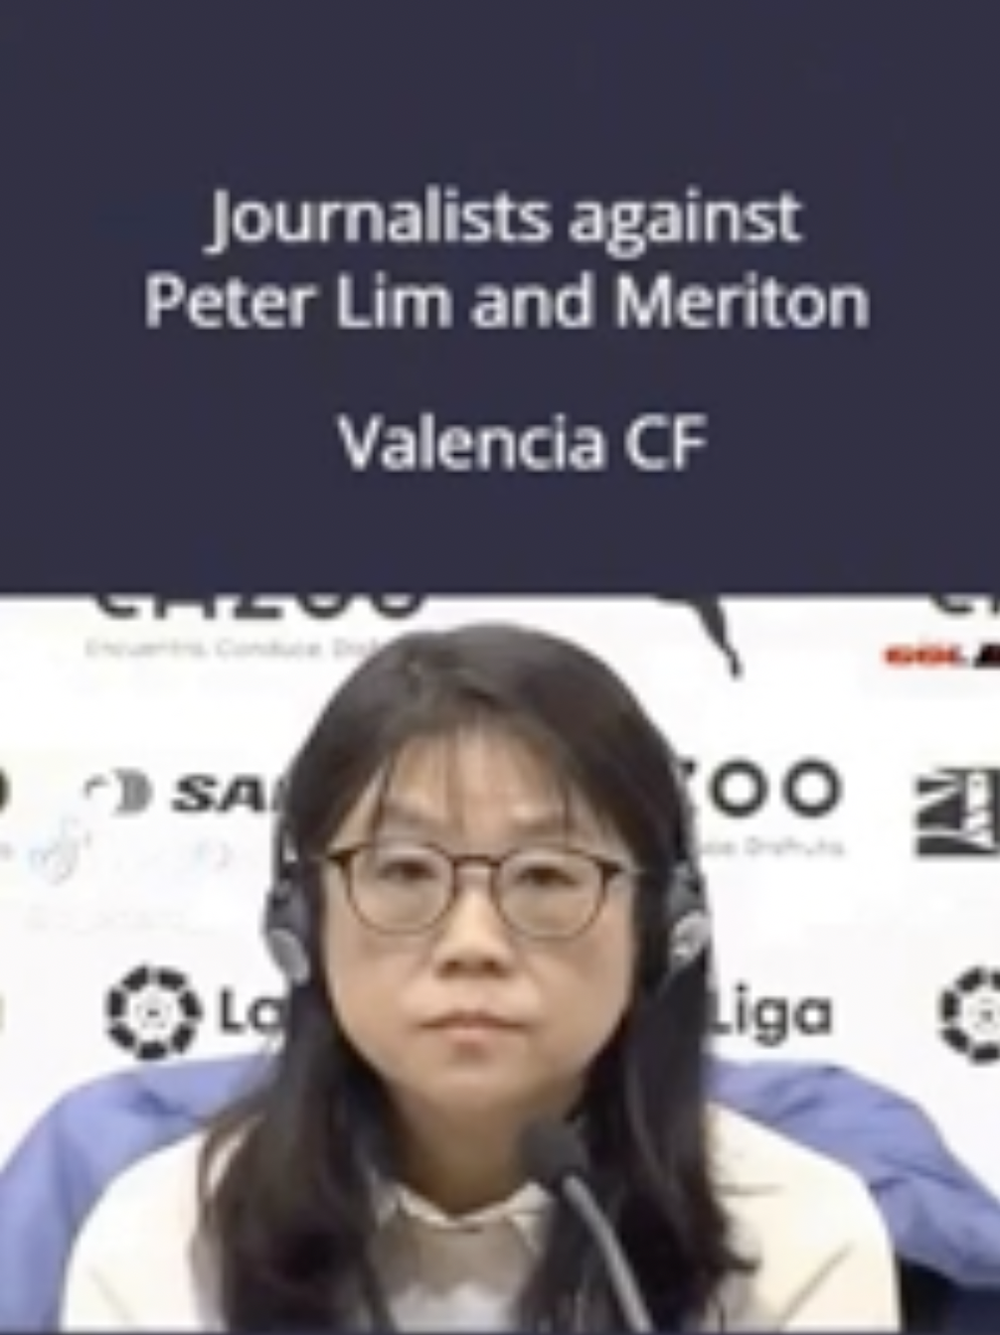 [스크랩]      발렌시아 기자회견에서 피터림 측에 불만을 강하게 표출하는 기자들 -cboard